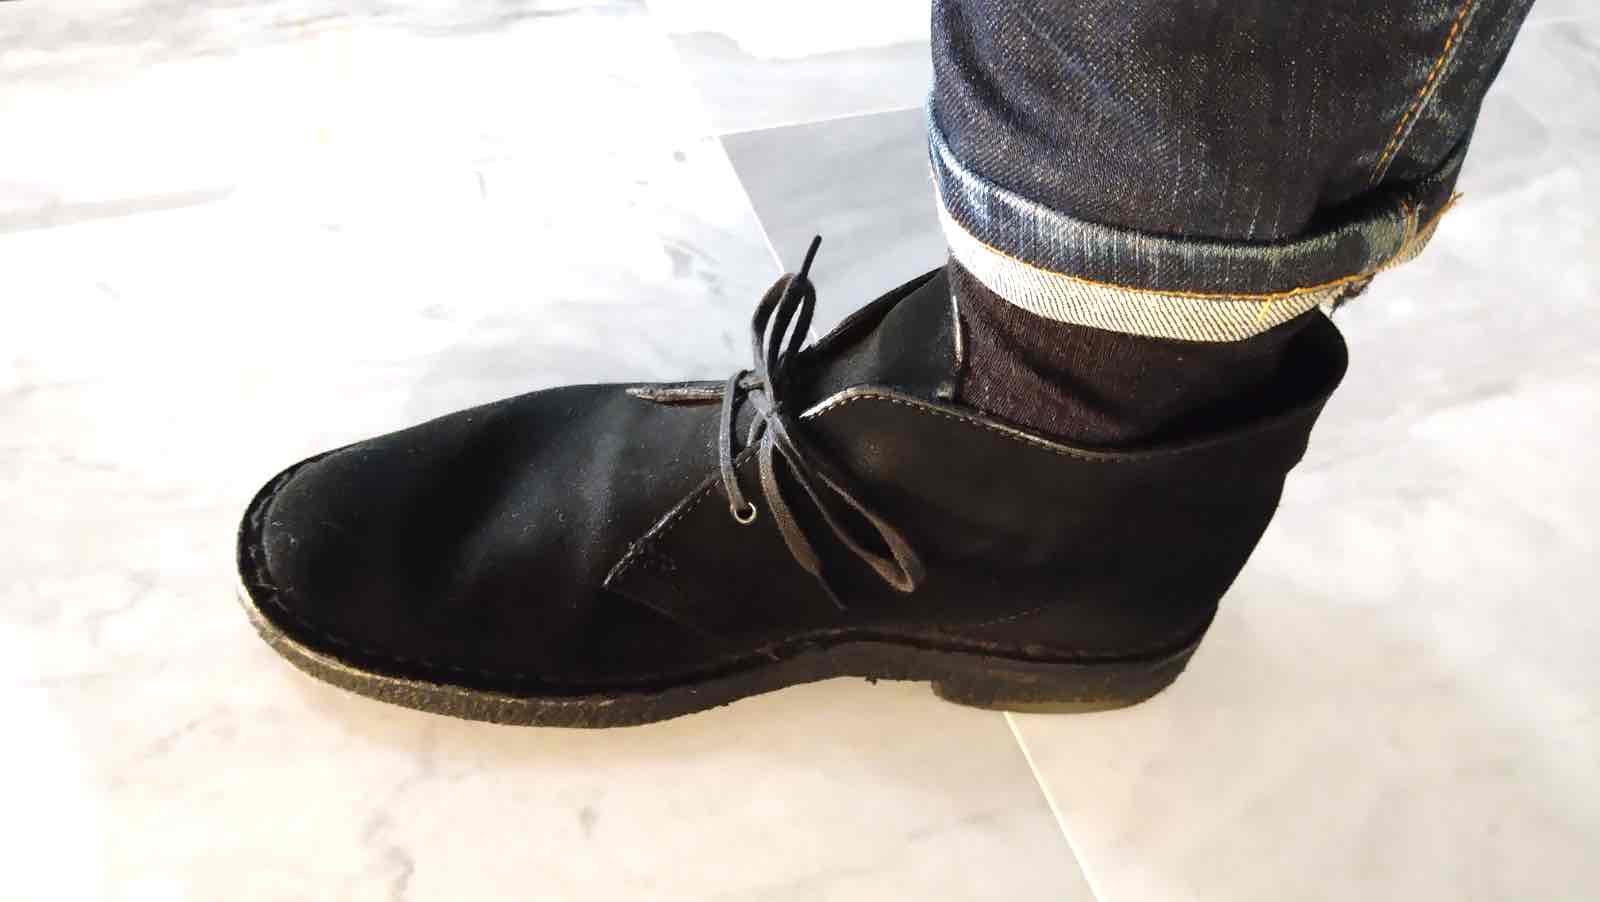 クラークス「デザートブーツ」【カジュアル靴の定番5年愛用の感想】 - toshiki-Blog